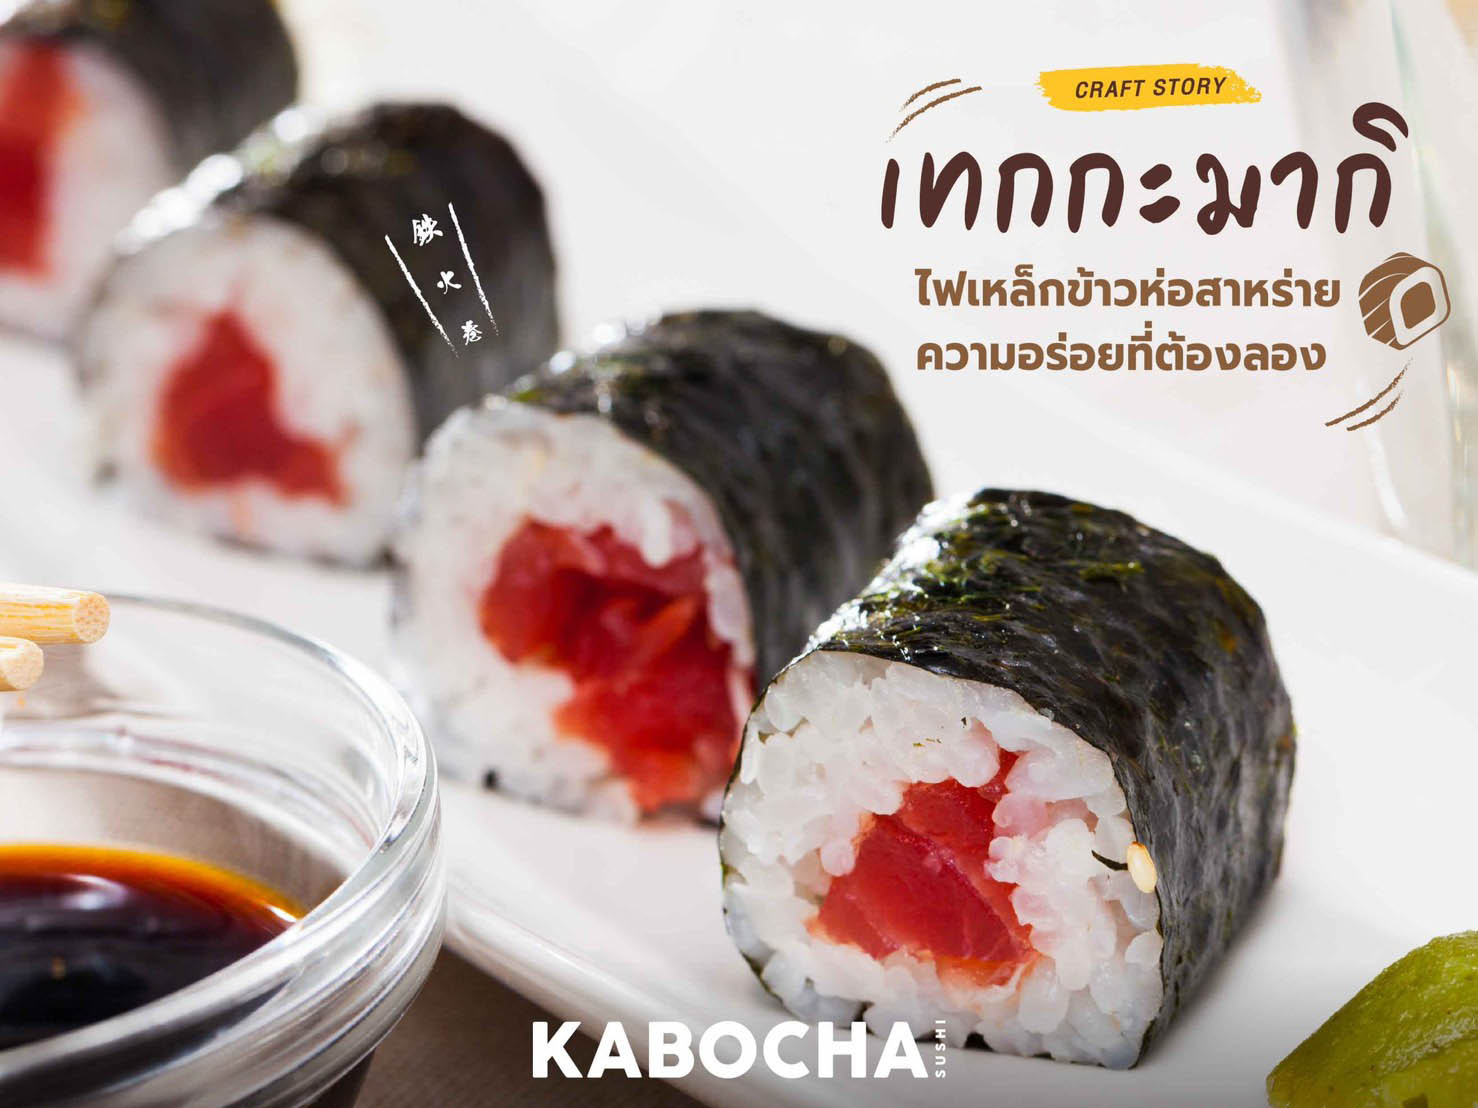 ร้านอาหารญี่ปุ่น kabocha sushi delivery ขอแนะนำ ฃ ข้าวห่อสาหร่าย เทกกะมากิ